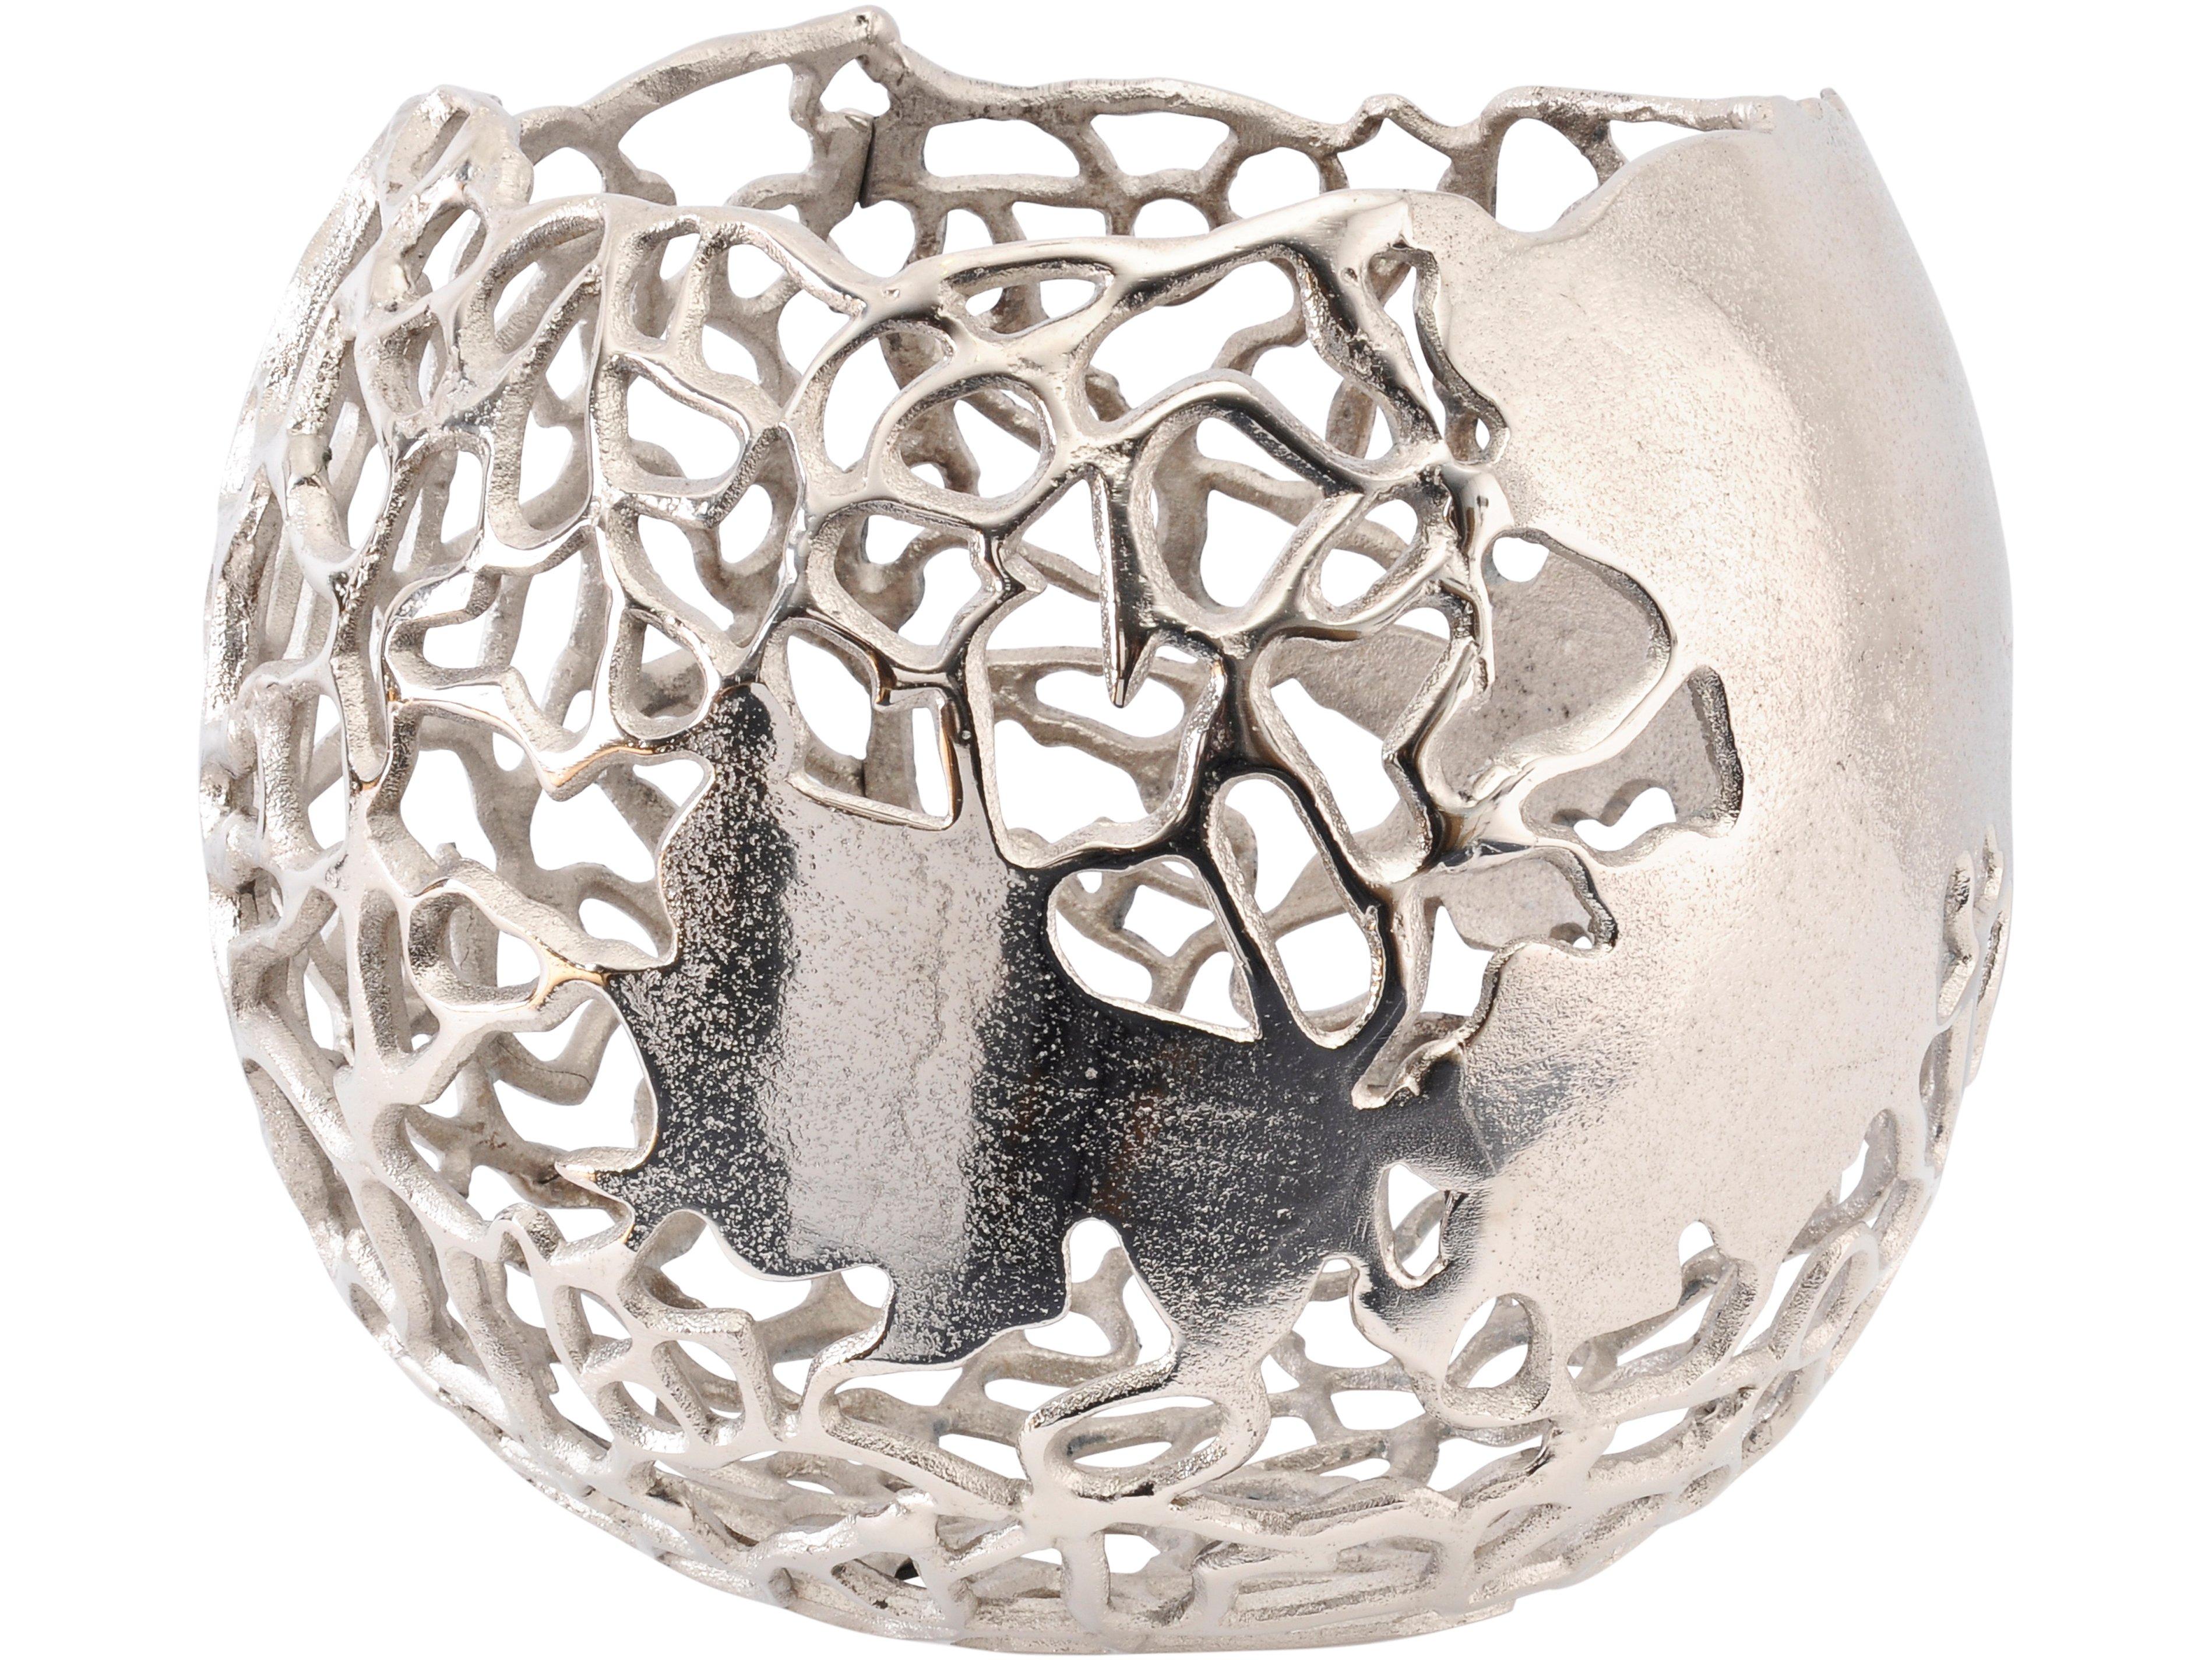 Apo Coral Spherical Aluminium Vase